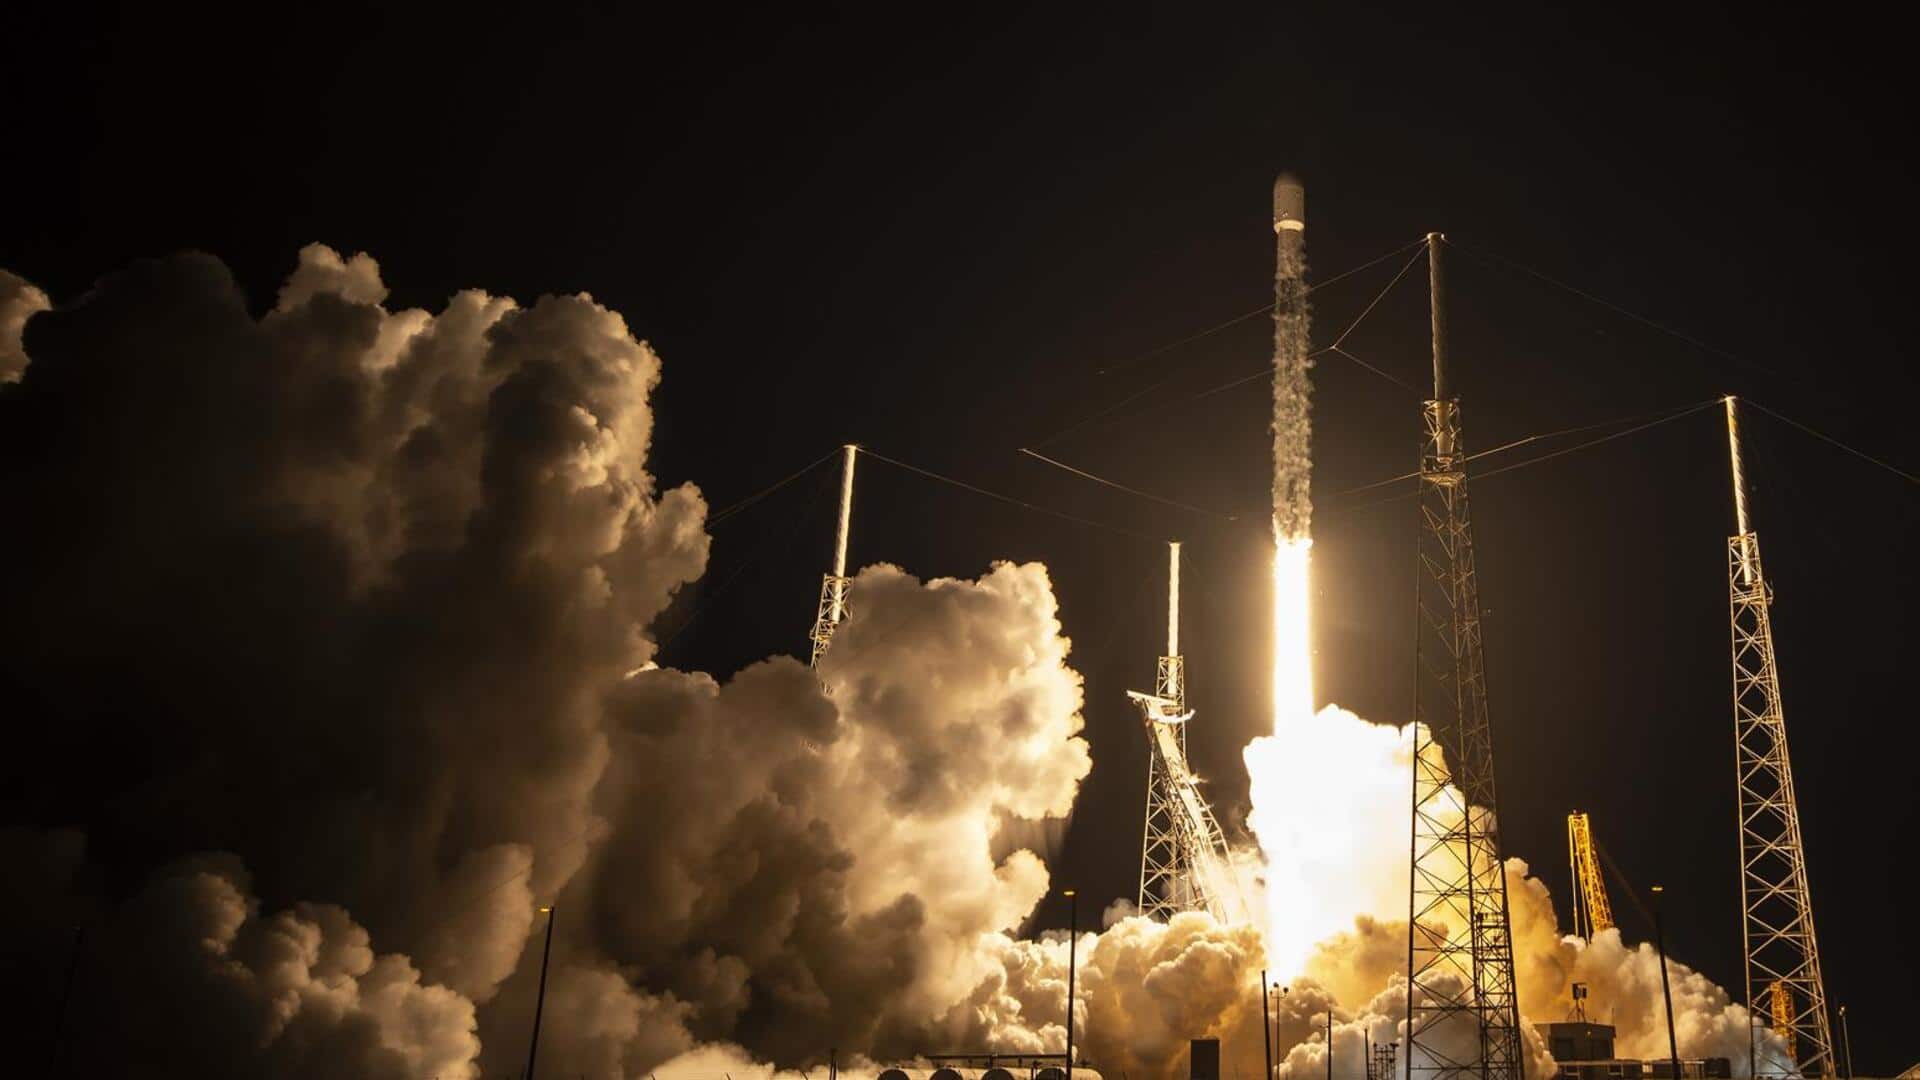 स्पेस-X ने लॉन्च किये 22 नए स्टारलिंक सैटेलाइट्स, जानिए कितनी हुई कुल संख्या